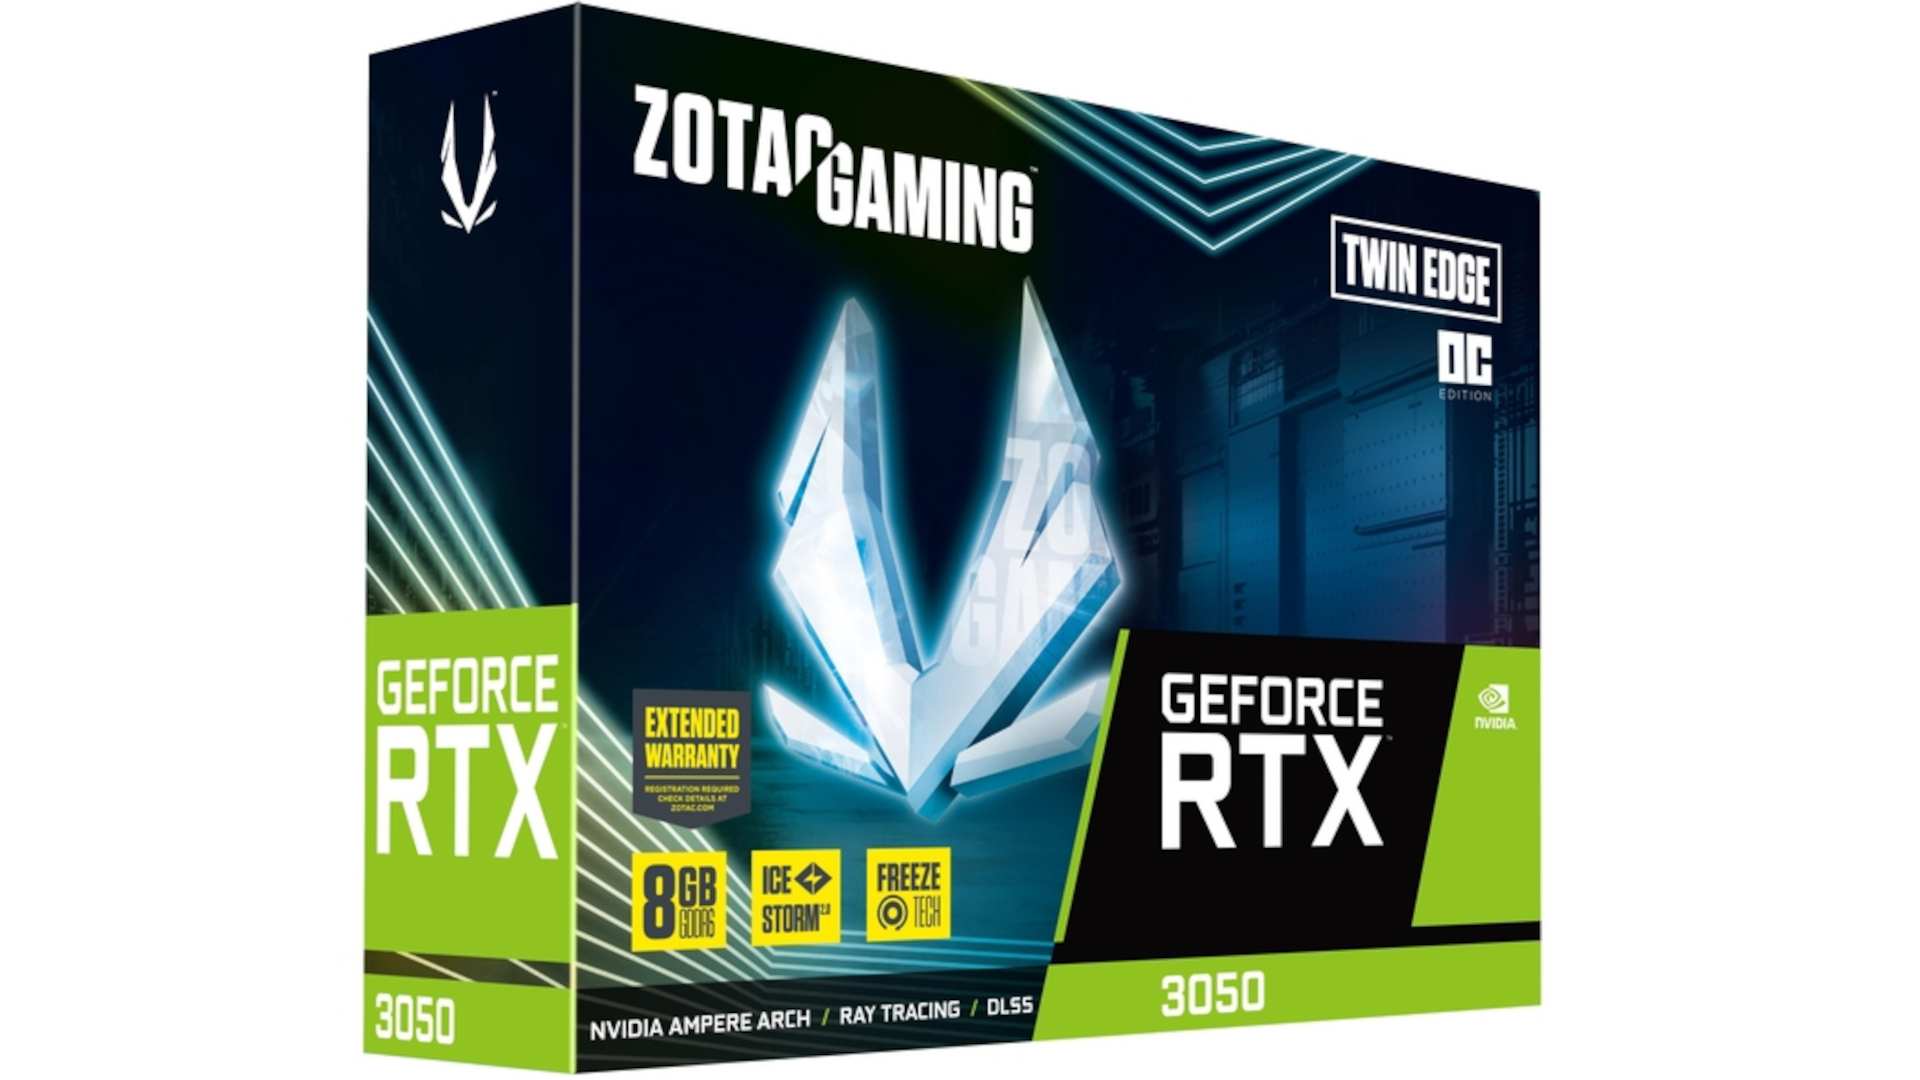 ZOTAC Gaming GeForce RTX 3050 Twin Edge OC 4